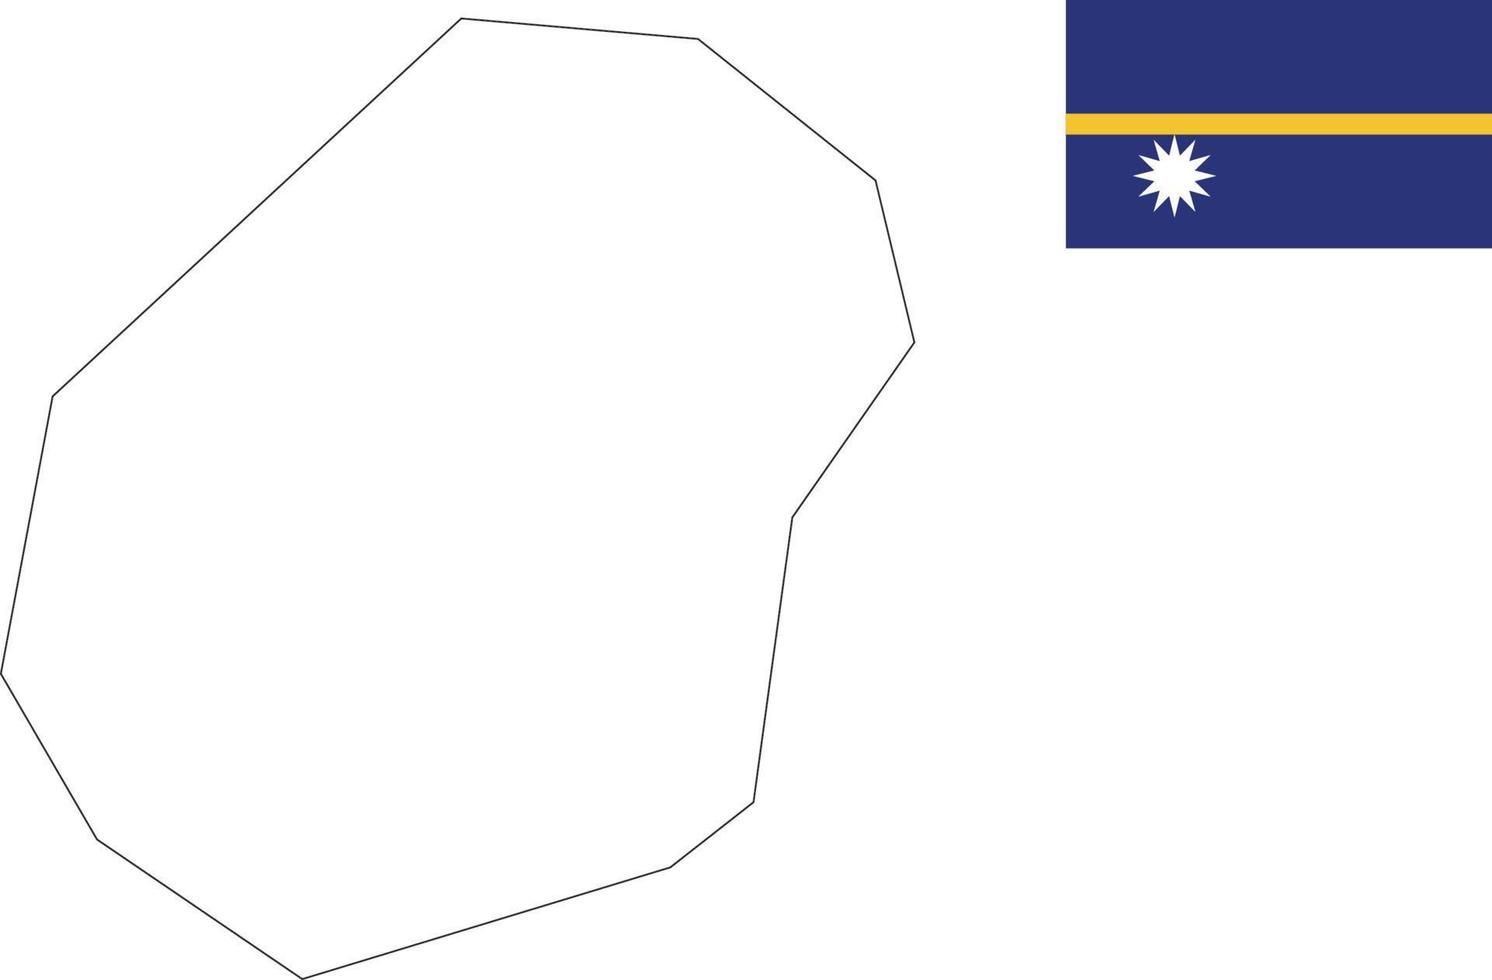 Karte und Flagge von Nauru vektor